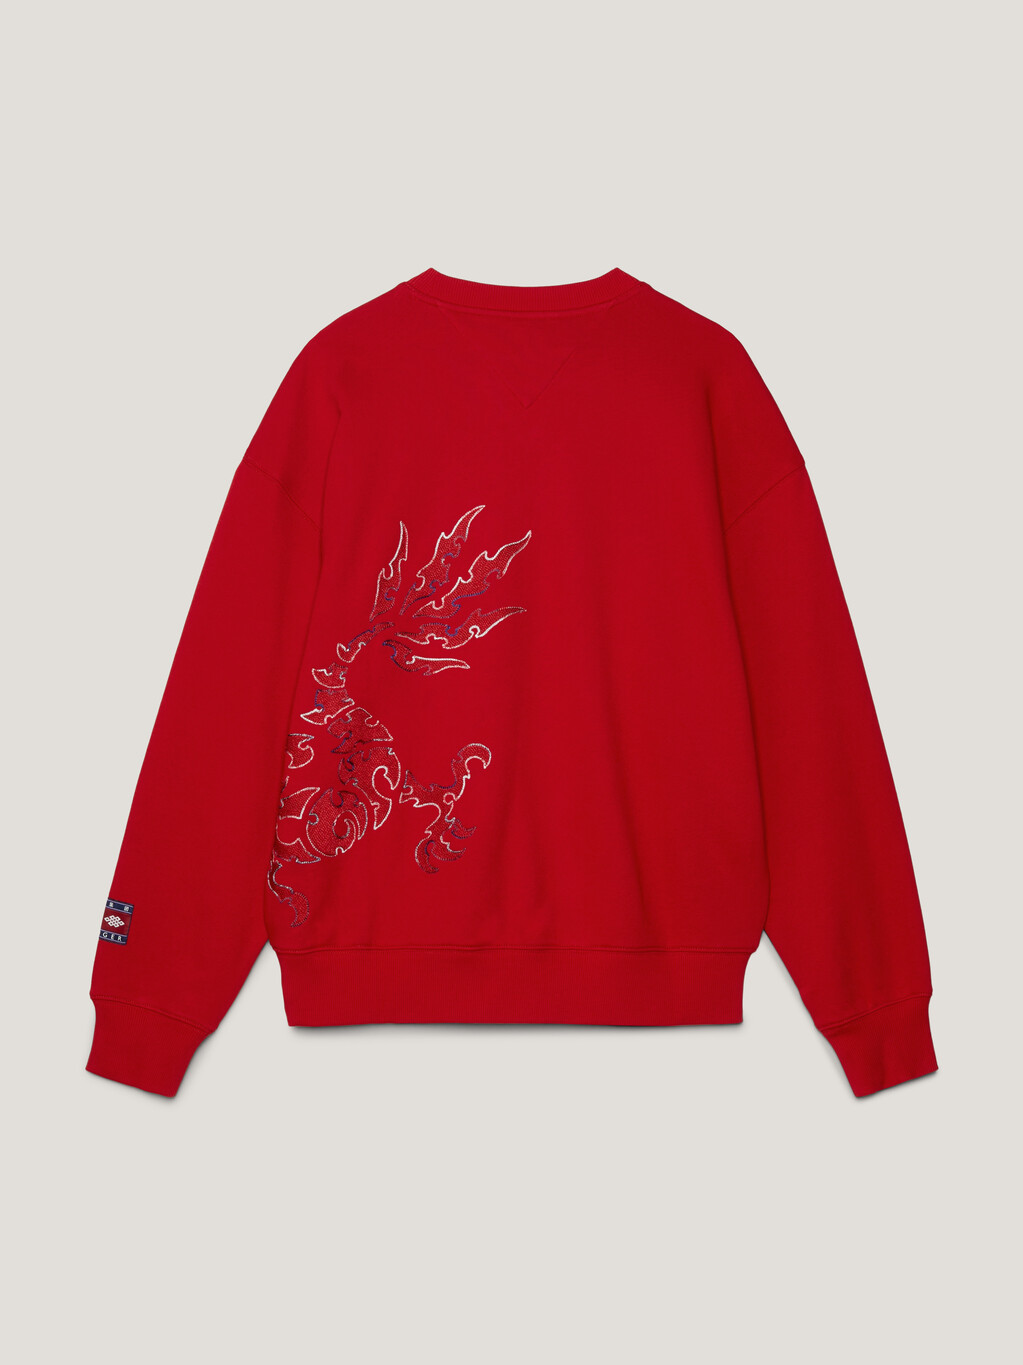 Tommy x CLOT Dual Gender Dragon Motif Sweatshirt, Arizona Red, hi-res